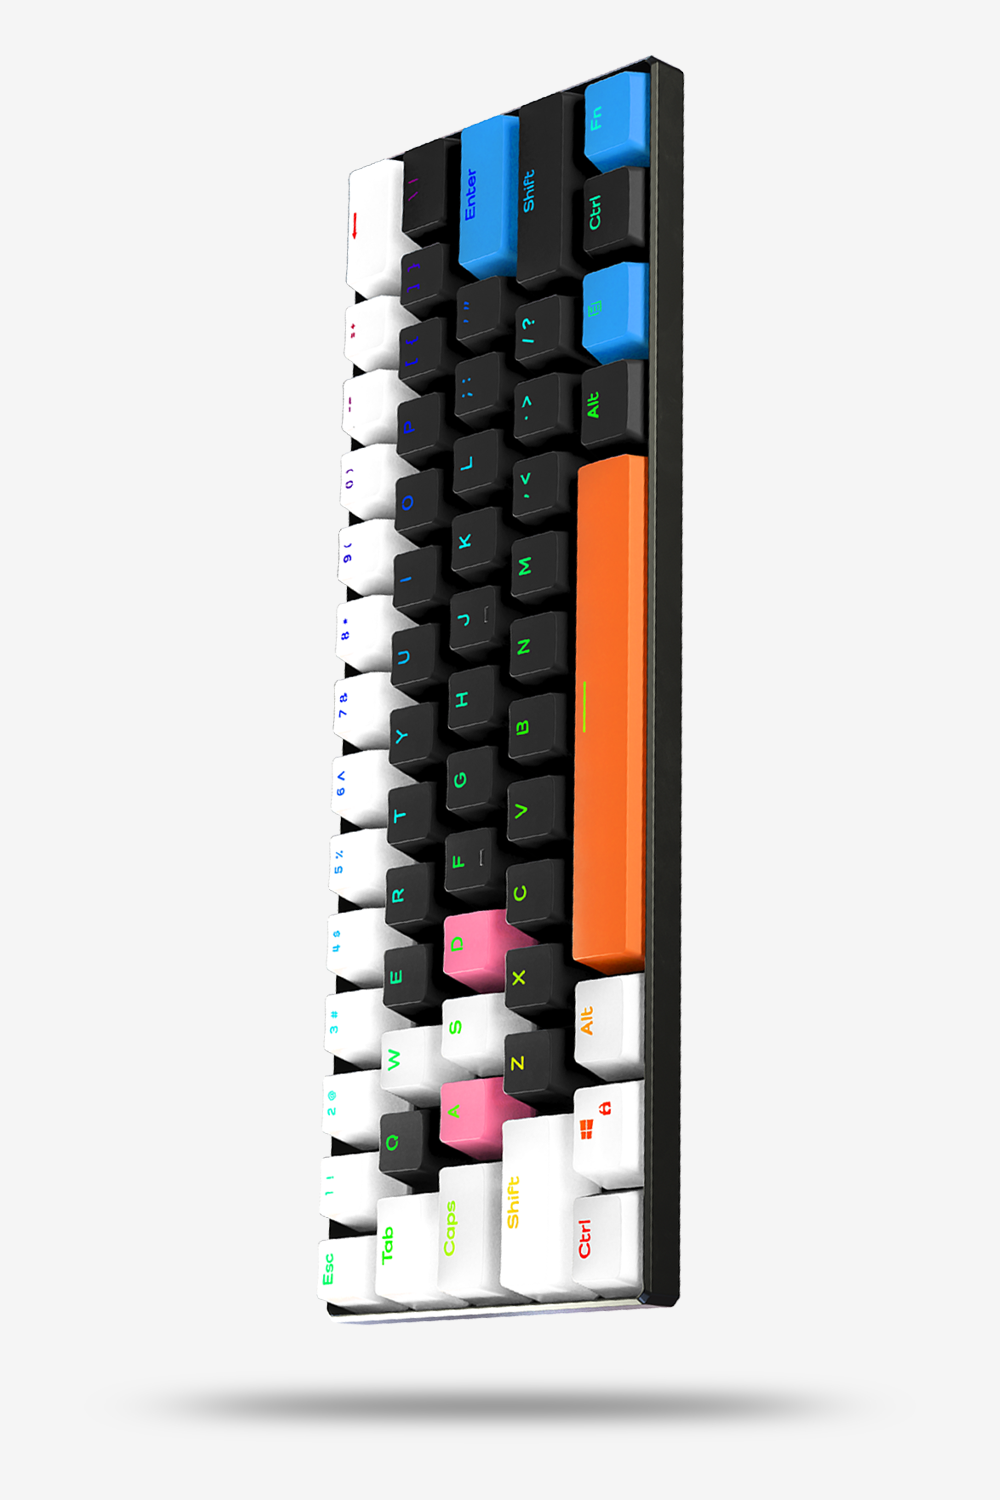 urway - Gaming Keyboards